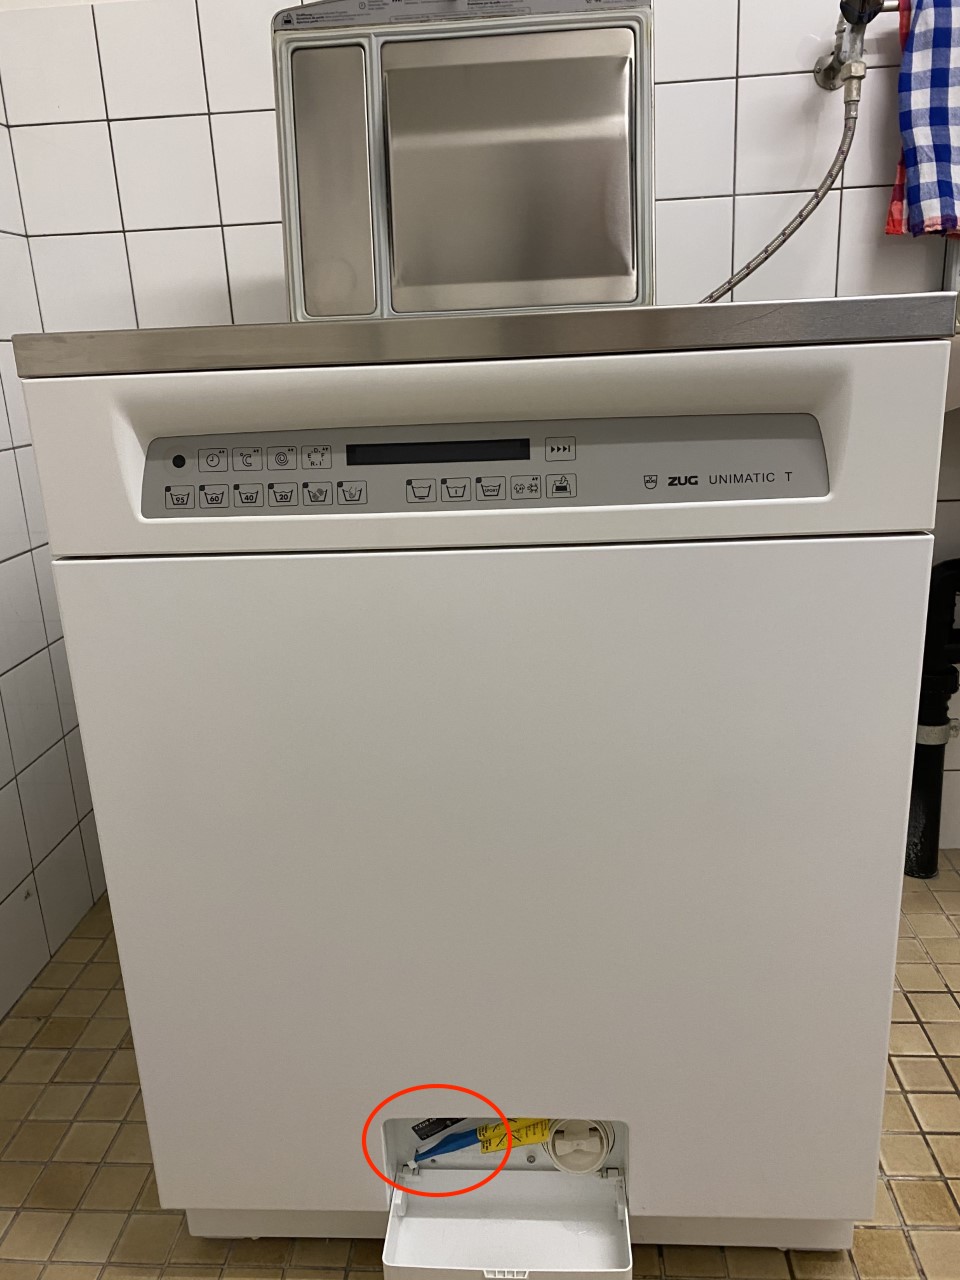 Gerätenummer Waschmaschine